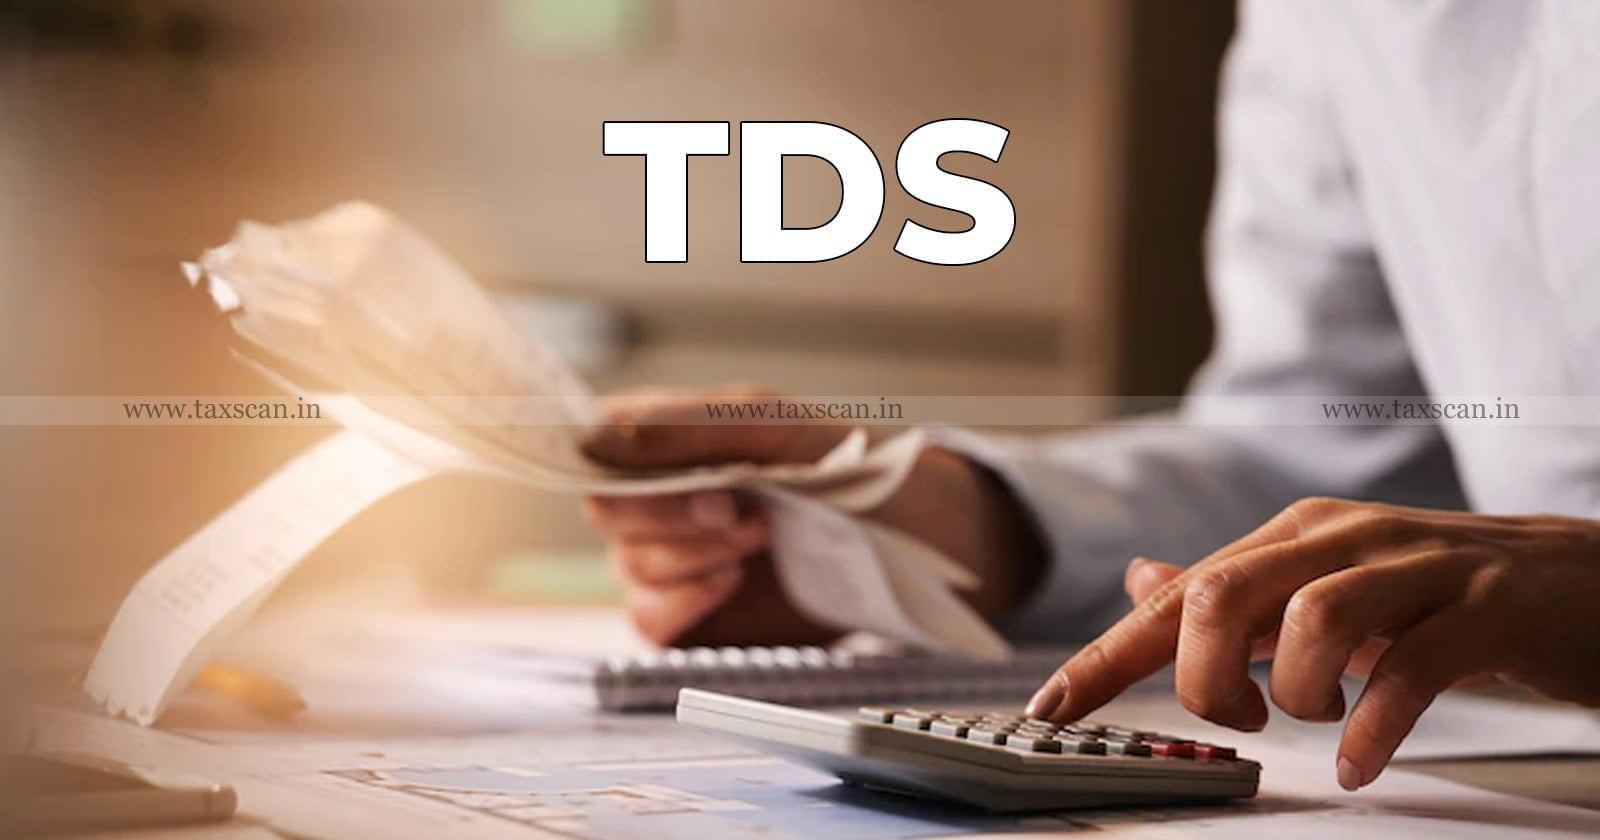 Refund - Ground of Non-Deposit - TDS - Employer - Delhi HC - Taxscan